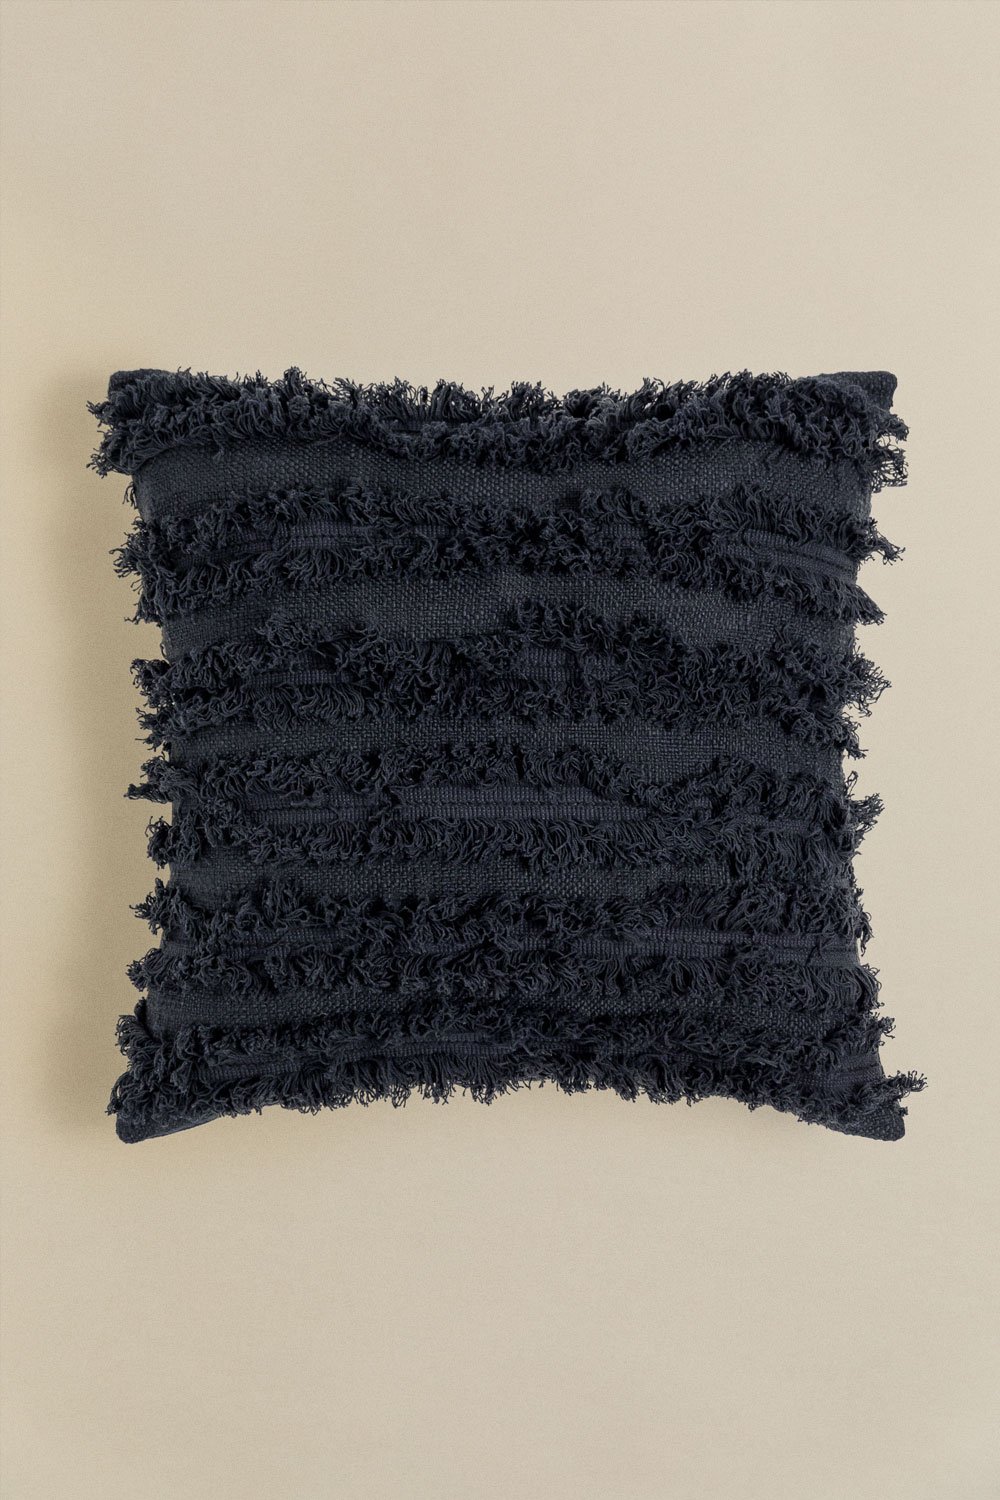 Cuscino quadrato in cotone (45x45 cm) Crato, immagine della galleria 1